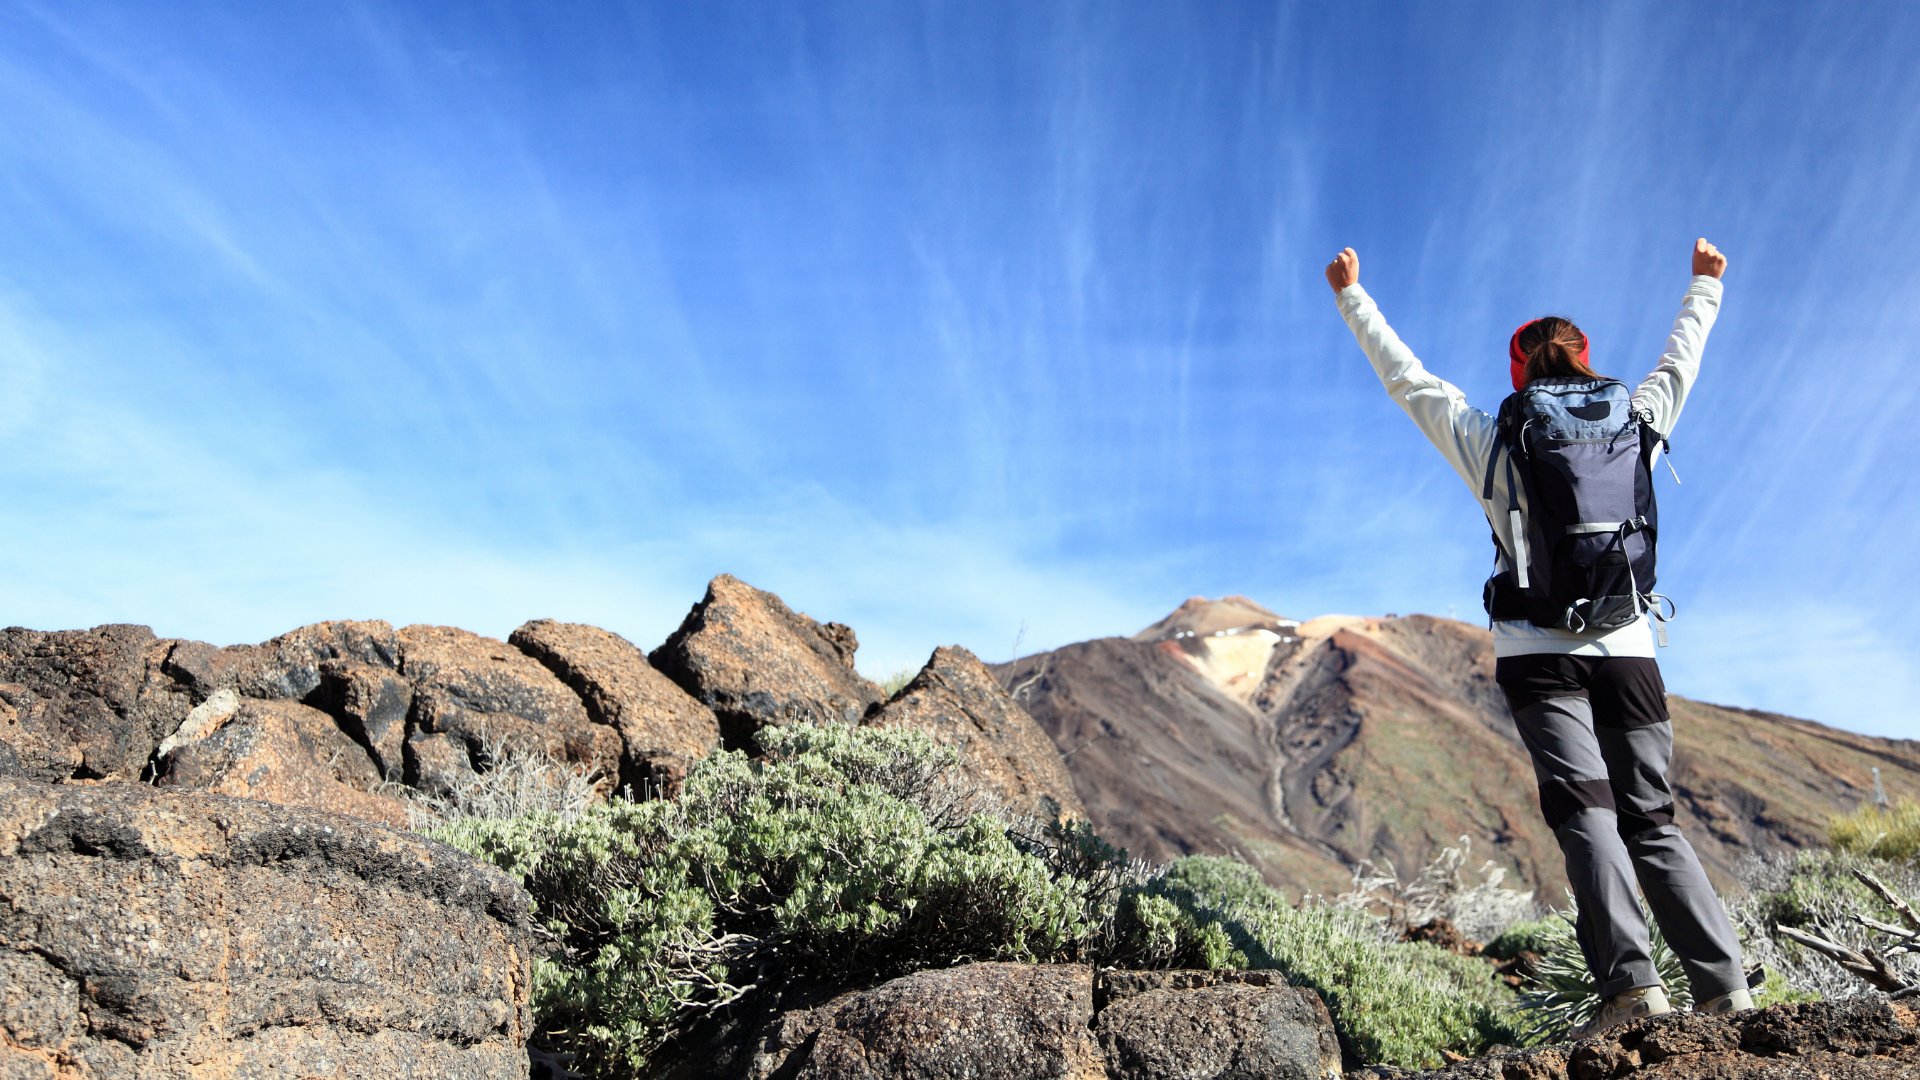 Pessoa comemorando de braços erguidos no topo de uma montanha